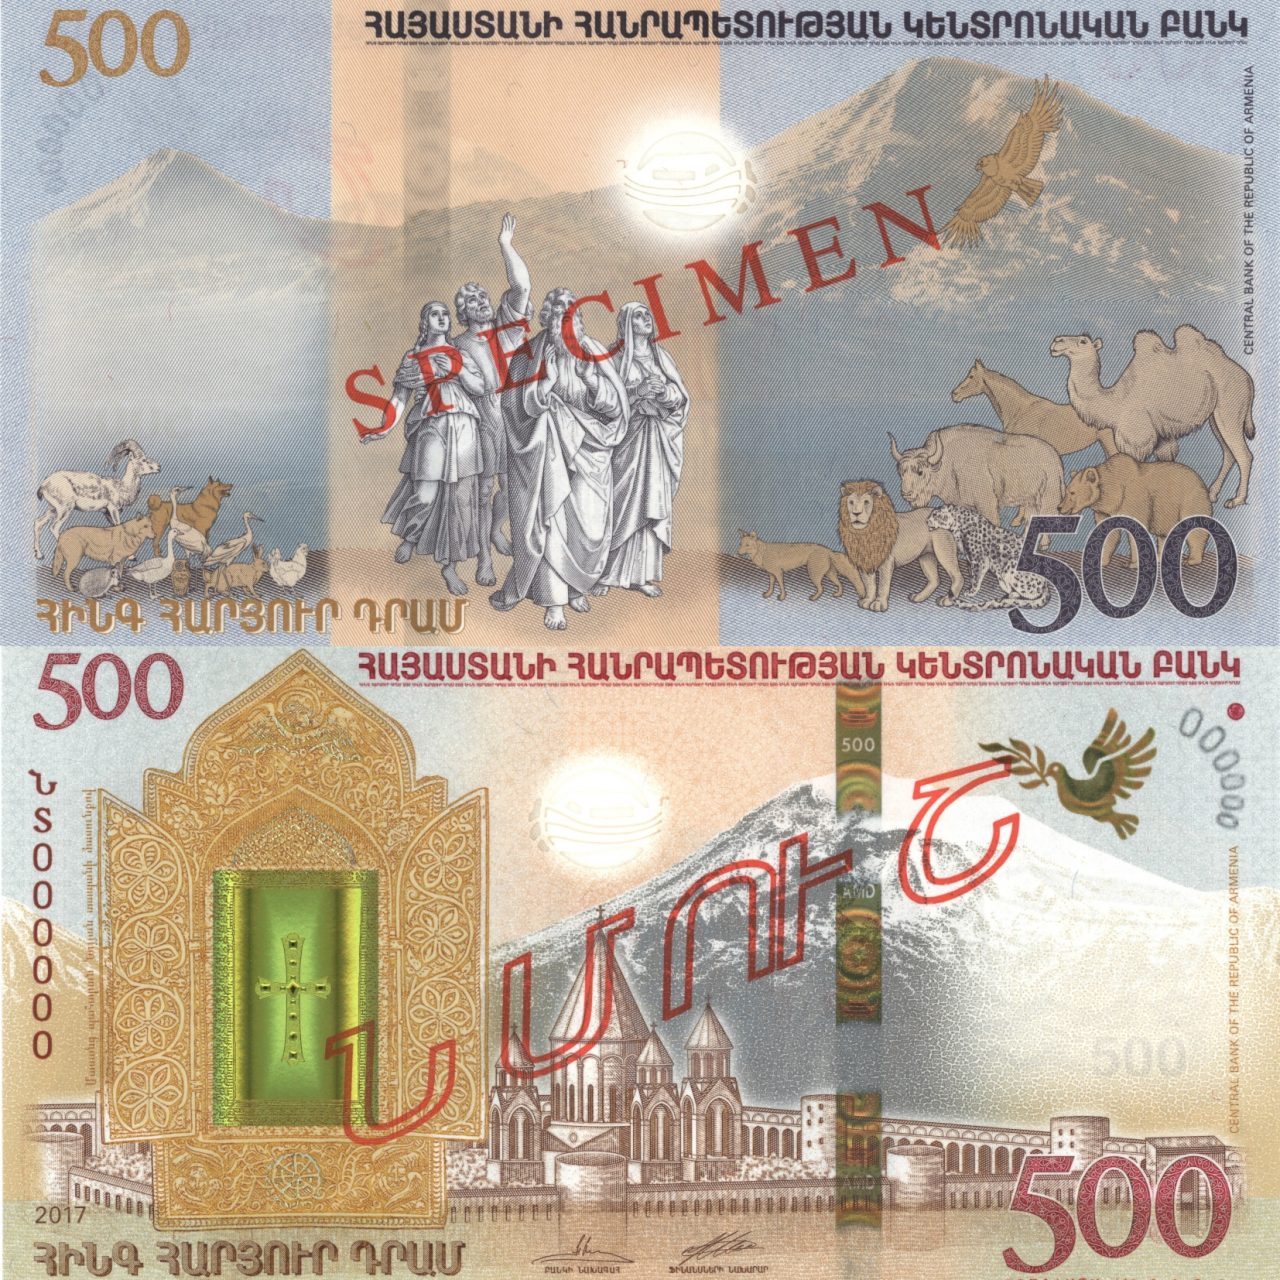 Կենտրոնական բանկ. շրջանառության մեջ են դրվել նոր 500 դրամ արժեքով «Նոյյան տապան» թղթադրամները